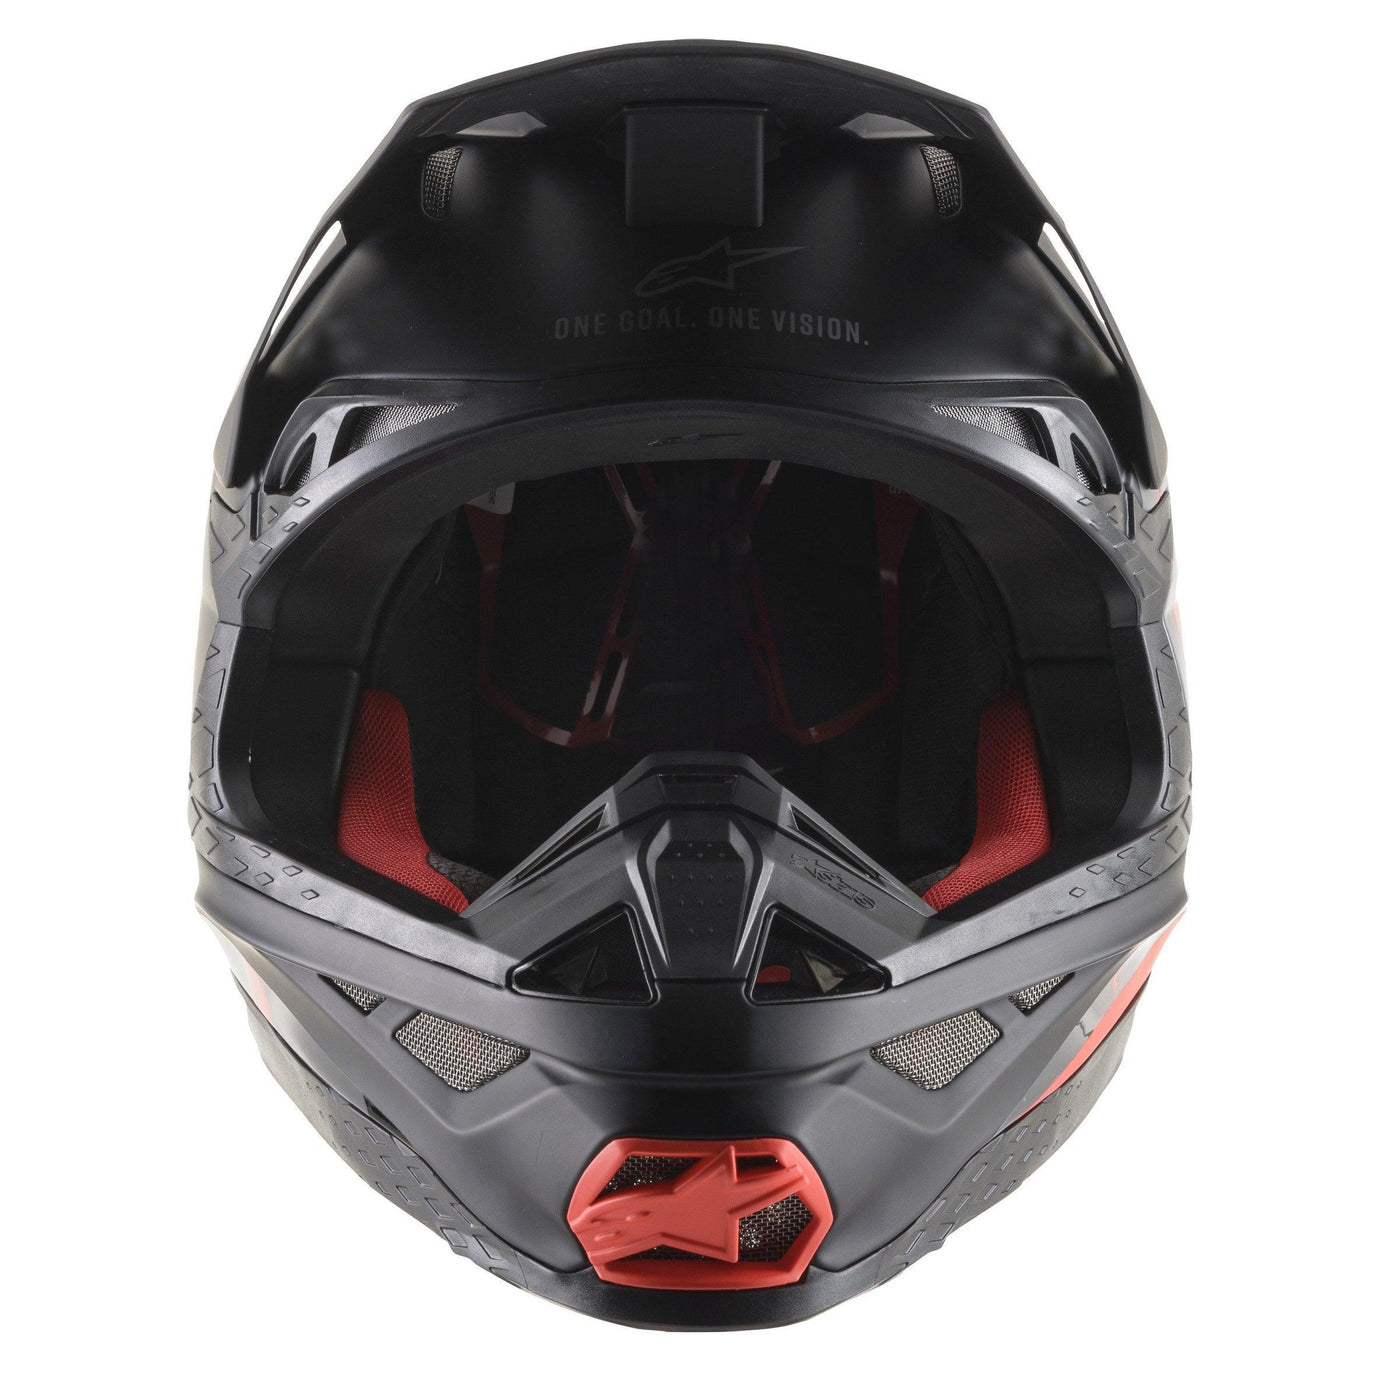 Alpinestars Supertech M8 Echo Black/Gray/Red Fluo Helmet - Motor Psycho Sport